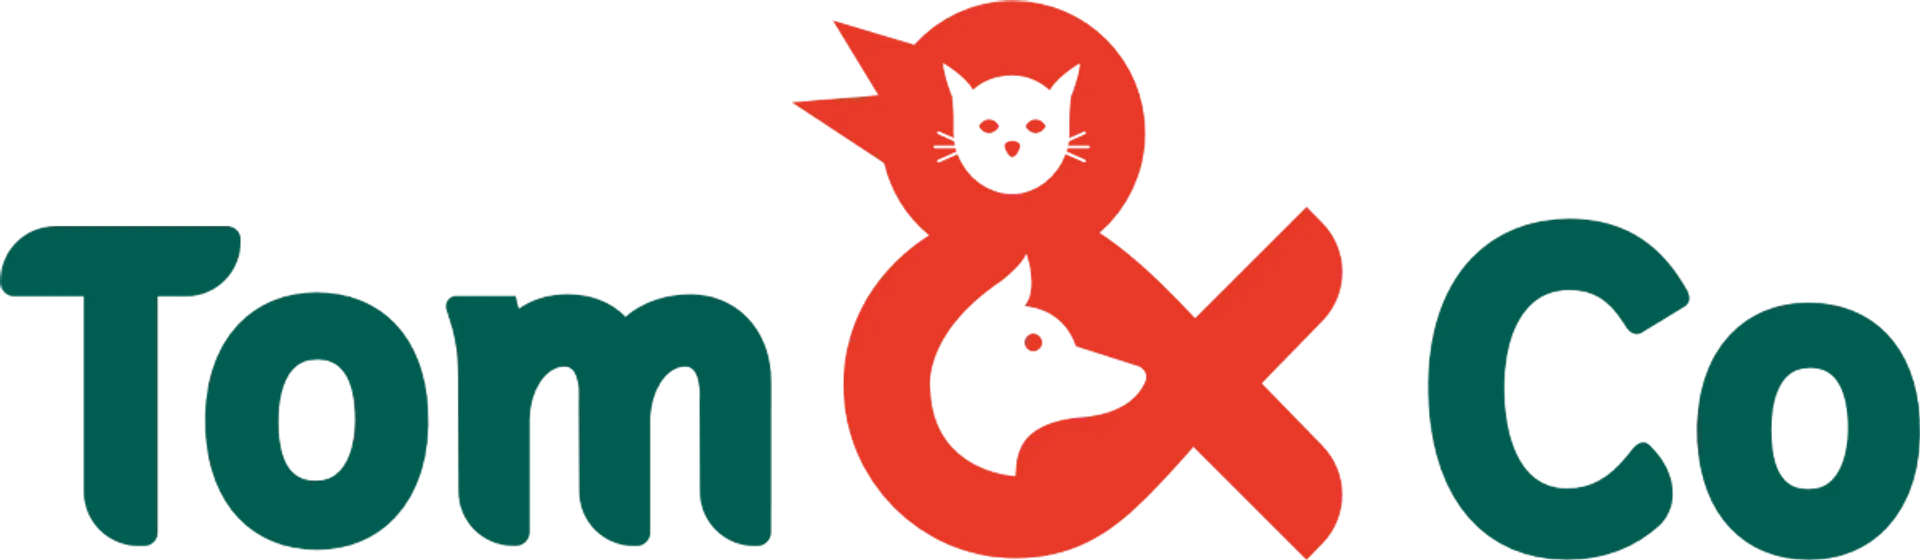 TOM&CO logo